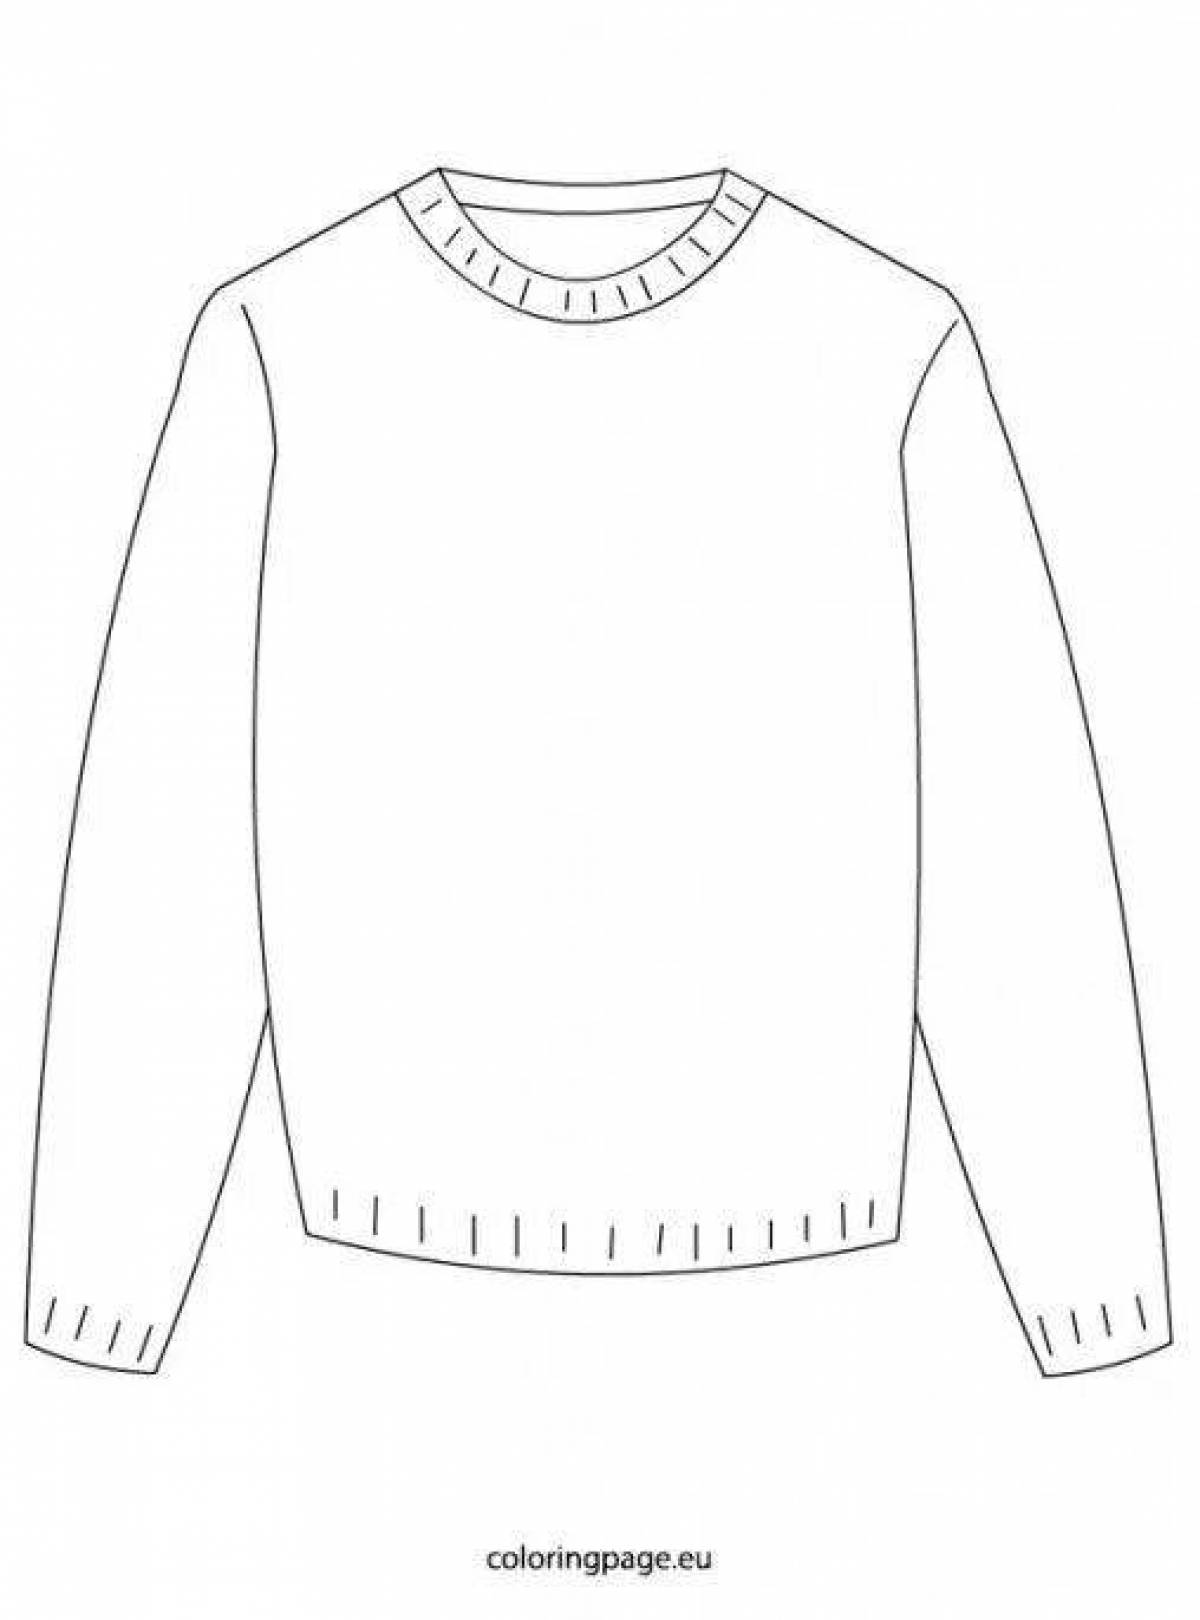 Трафарет свитера для рисования